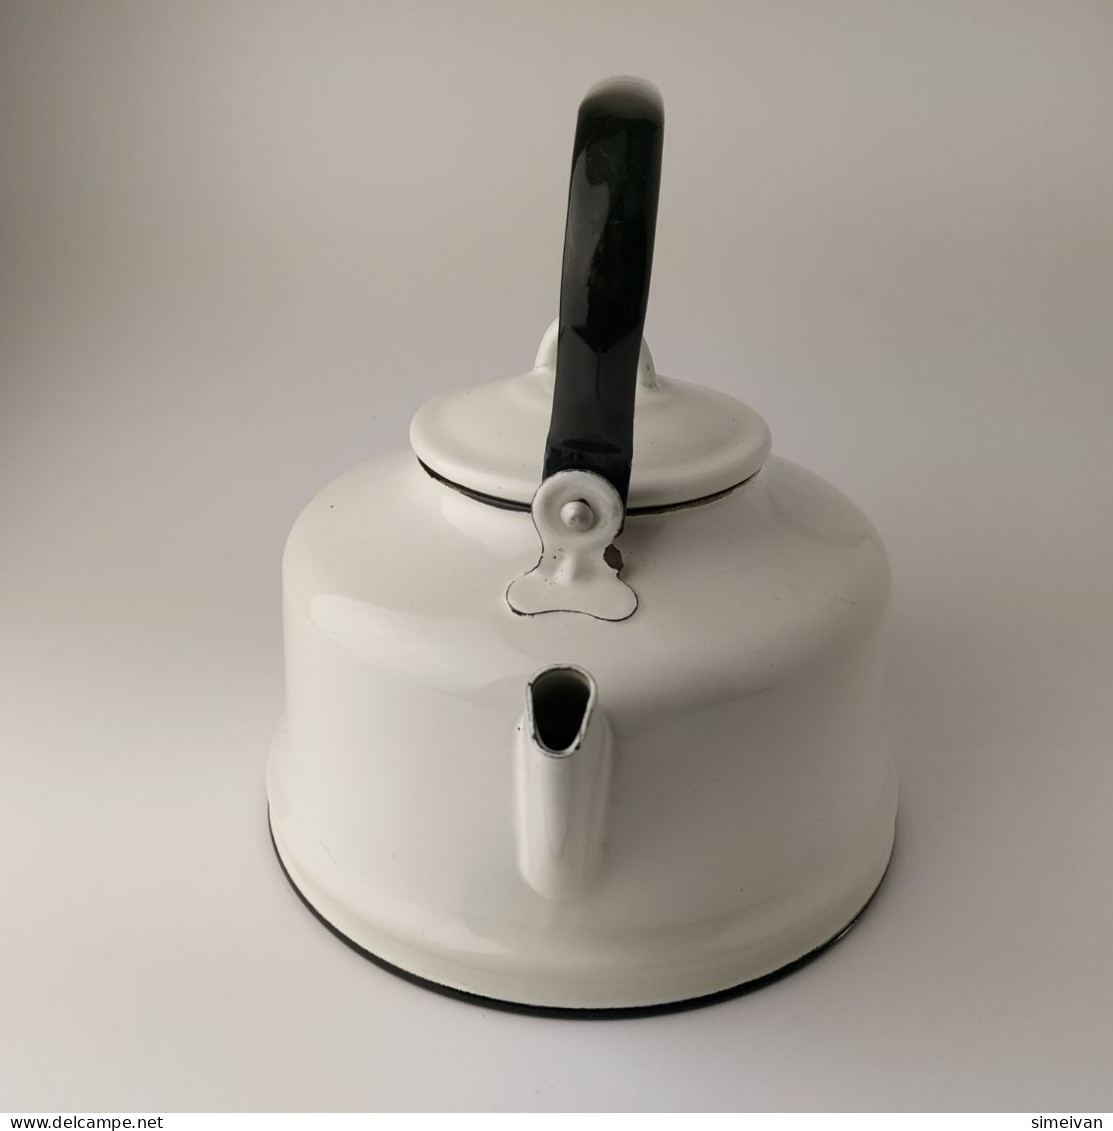 Vintage Enamel Tea Kettle Pot Metal White Black Handle 2.5 Litters Teapot #5465 - Teekannen